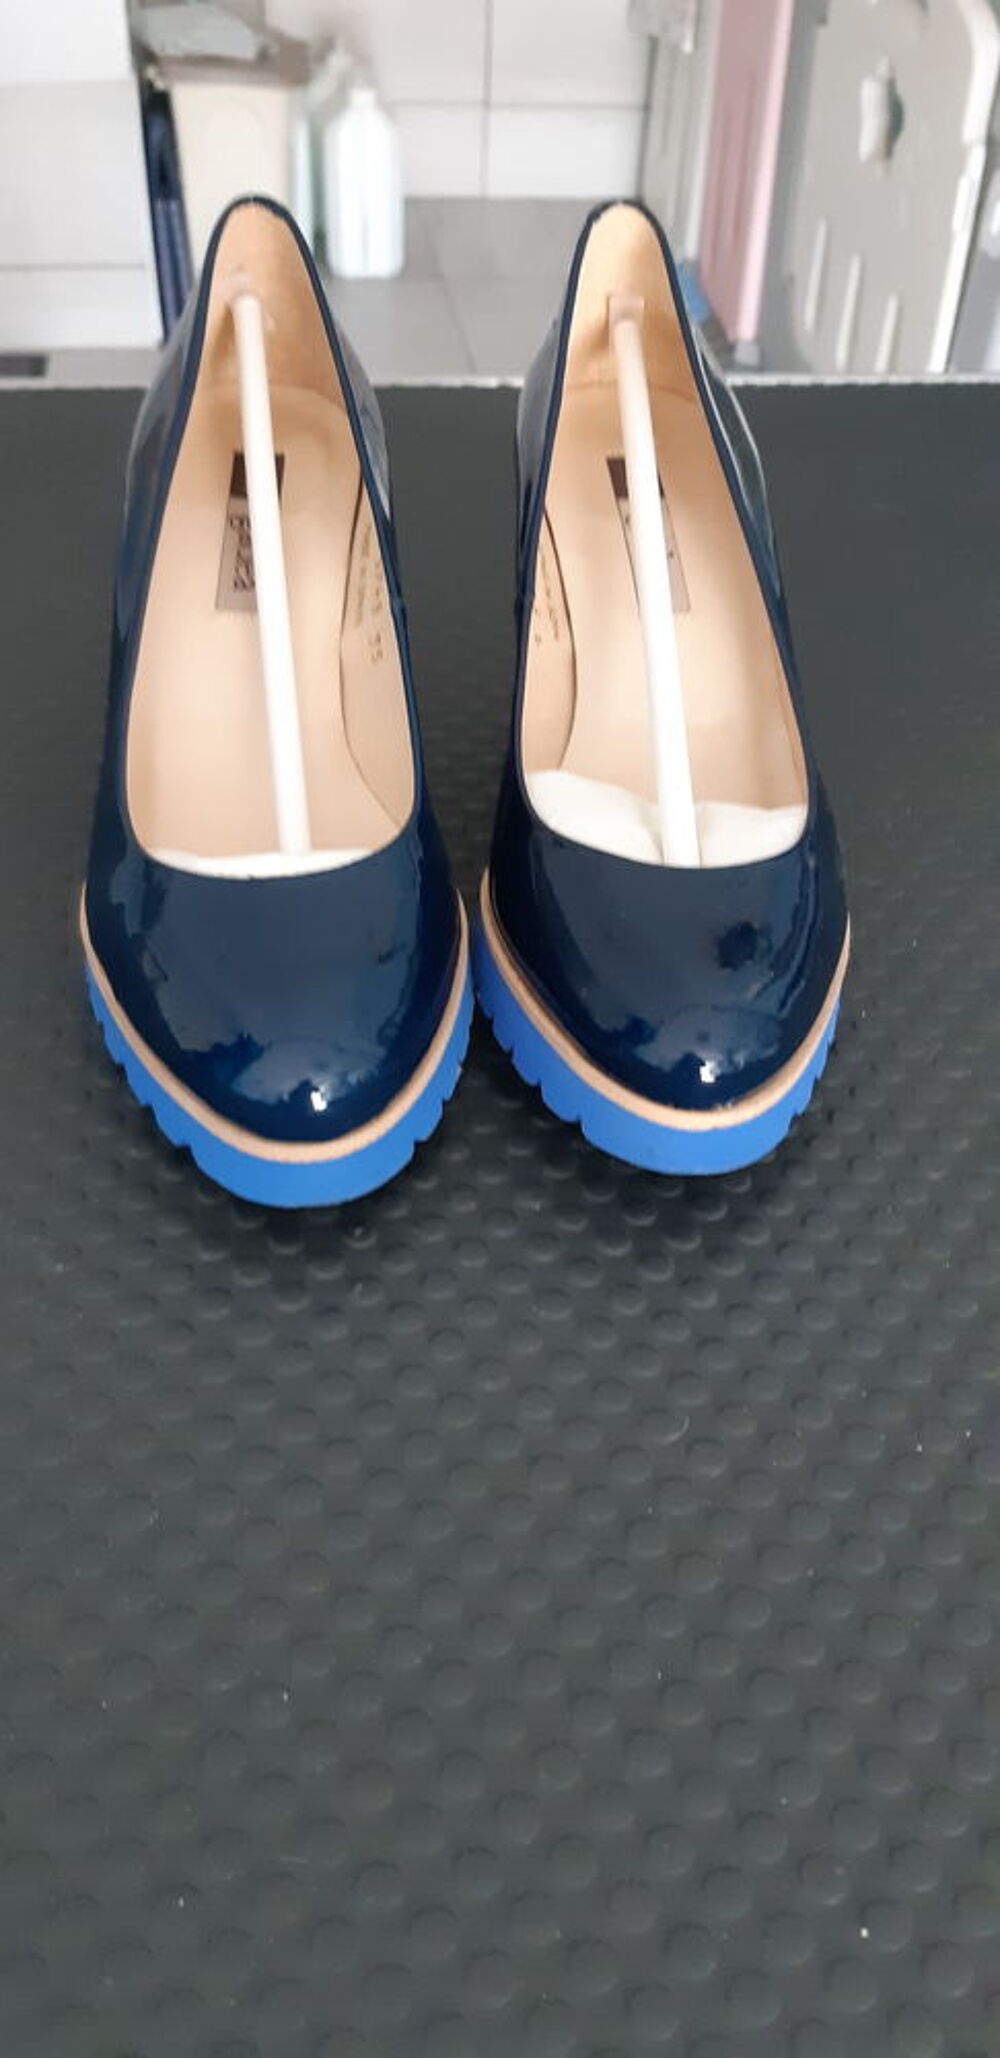 Escarpins femme en cuir vernie bleu marine Chaussures